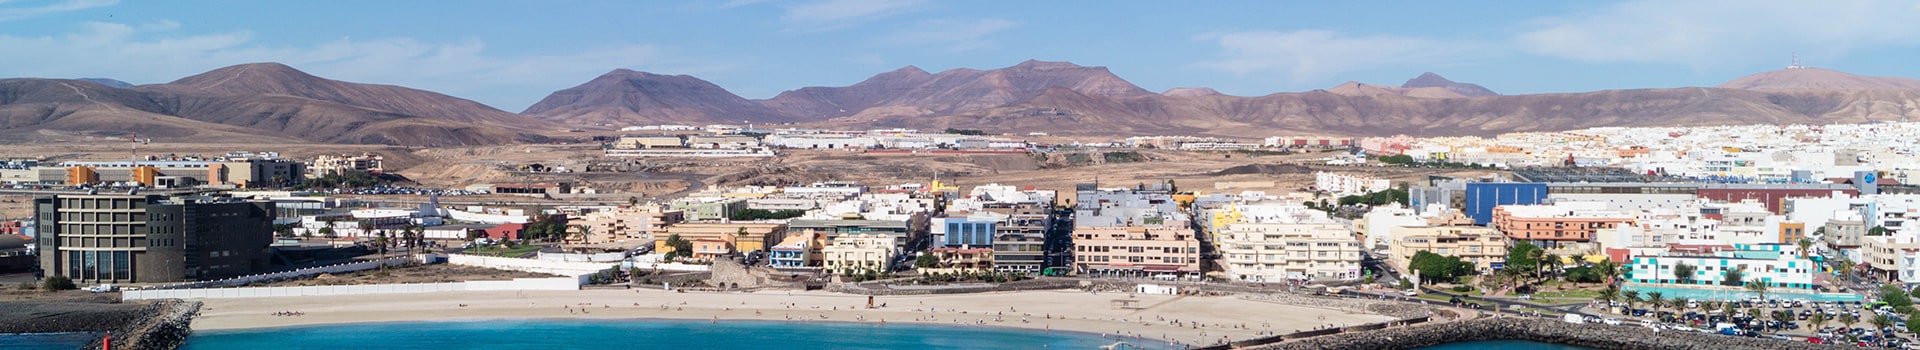 Minorque - Fuerteventura